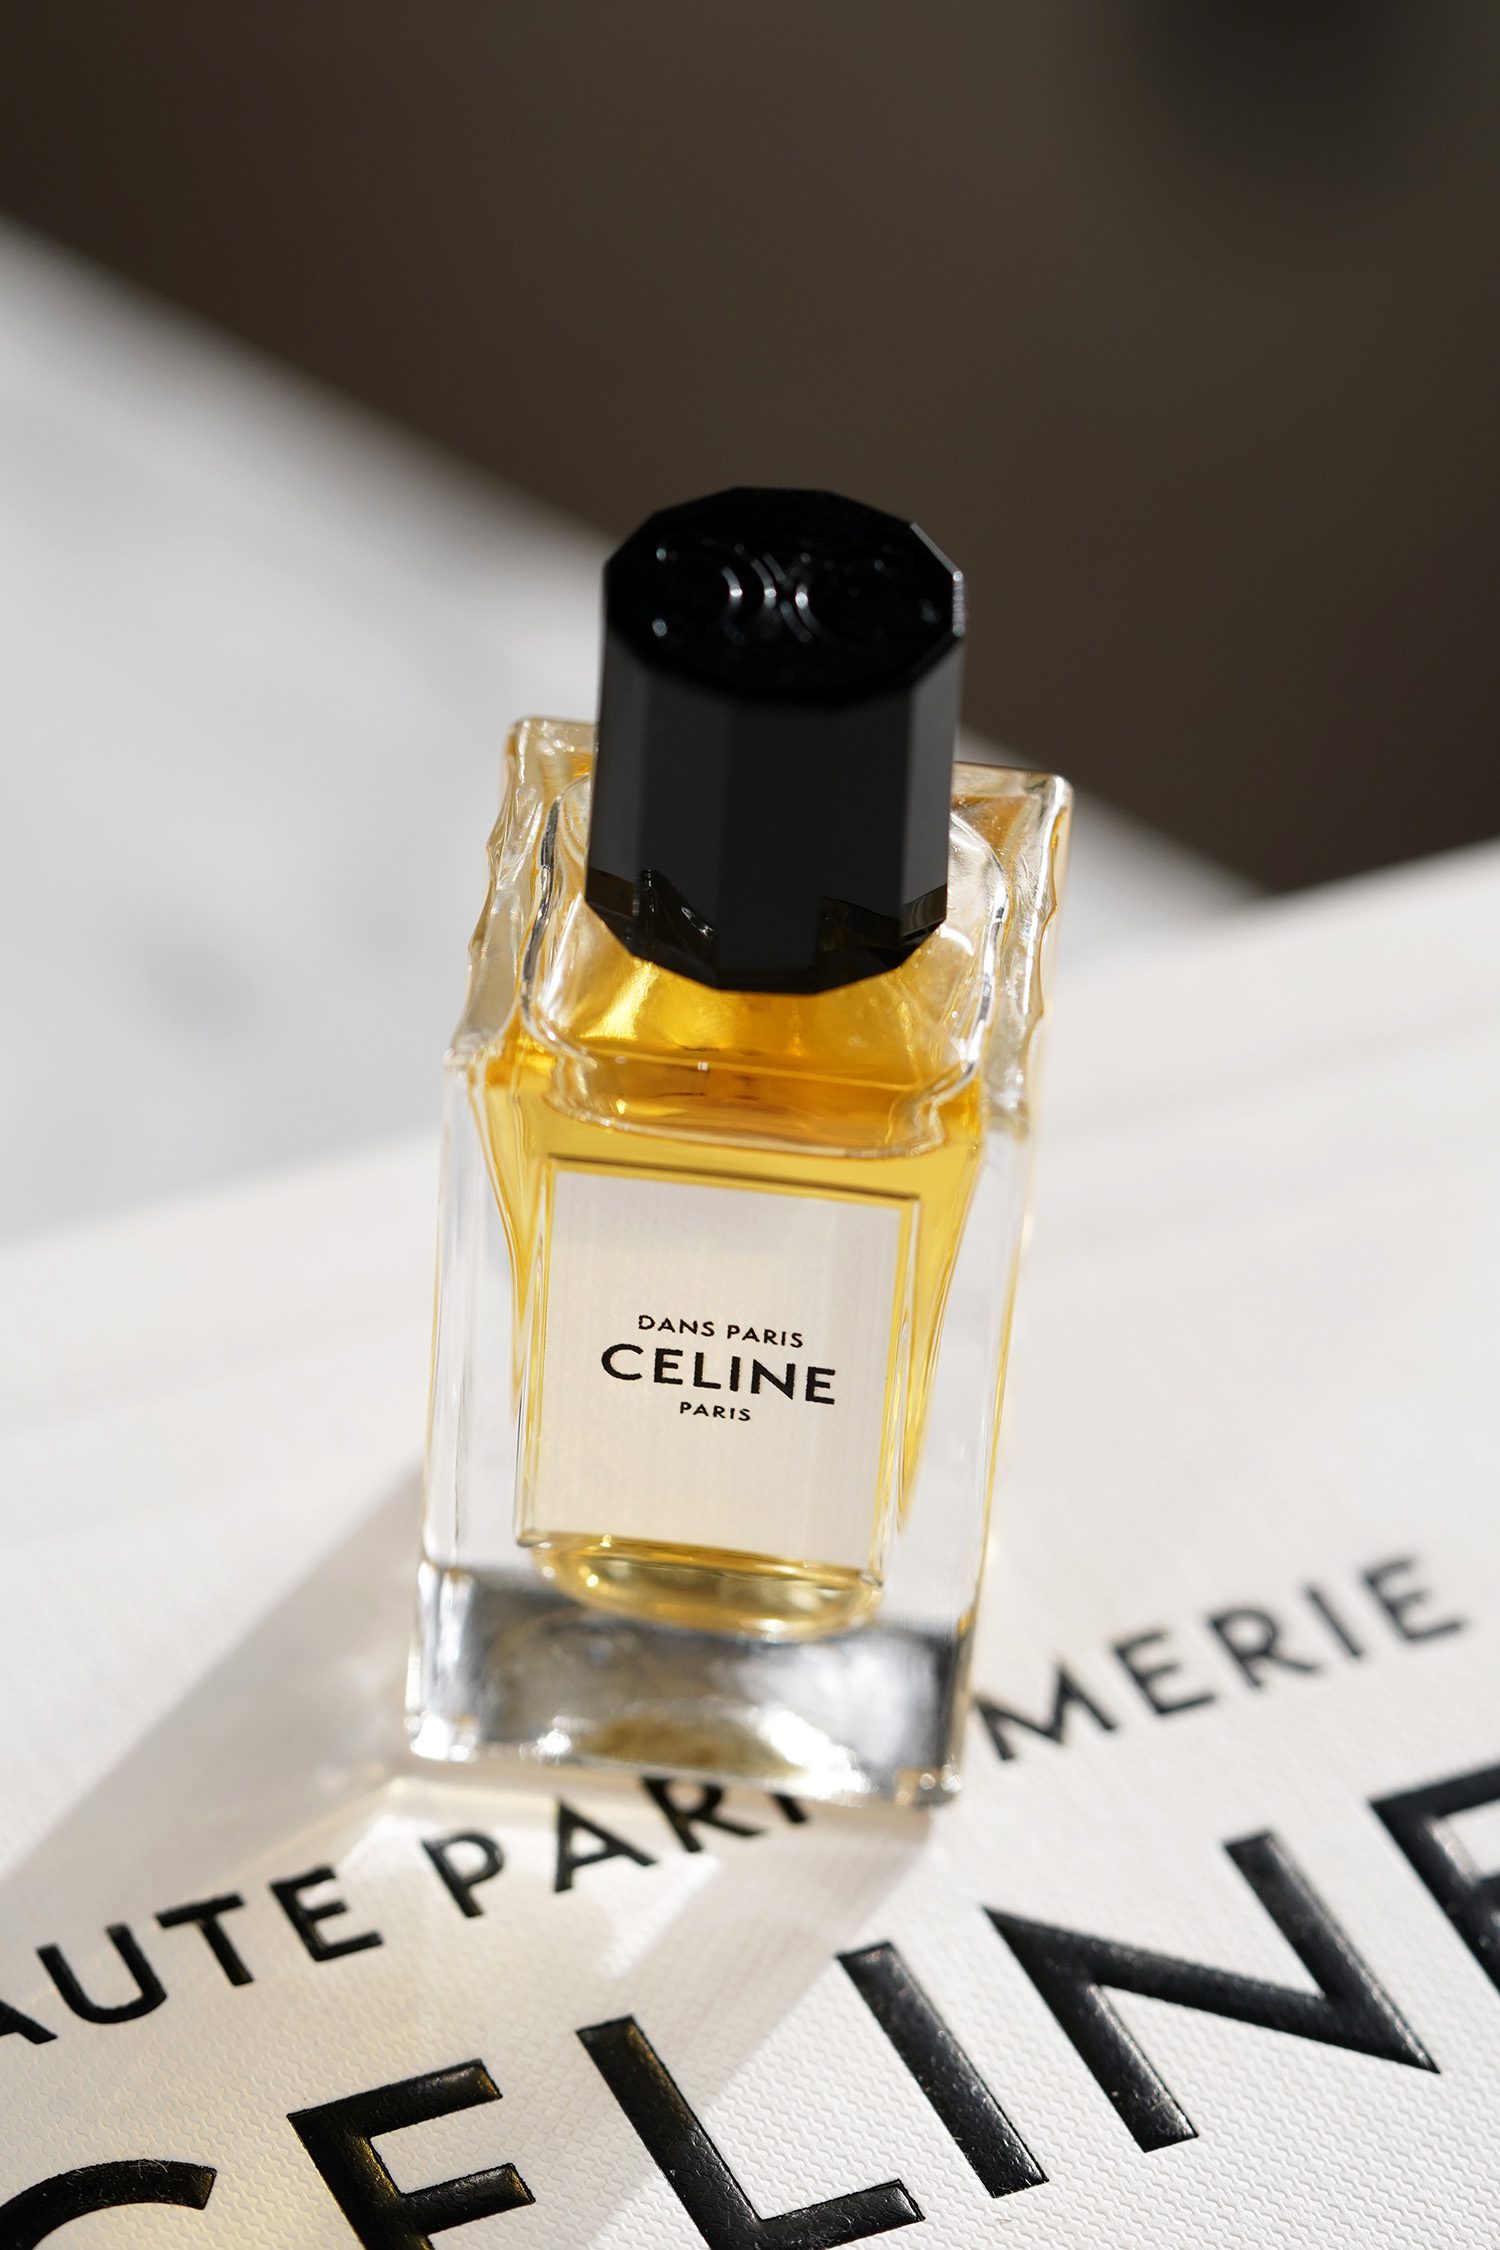 Celine Triomphe Wallet Review - The Velvet Life